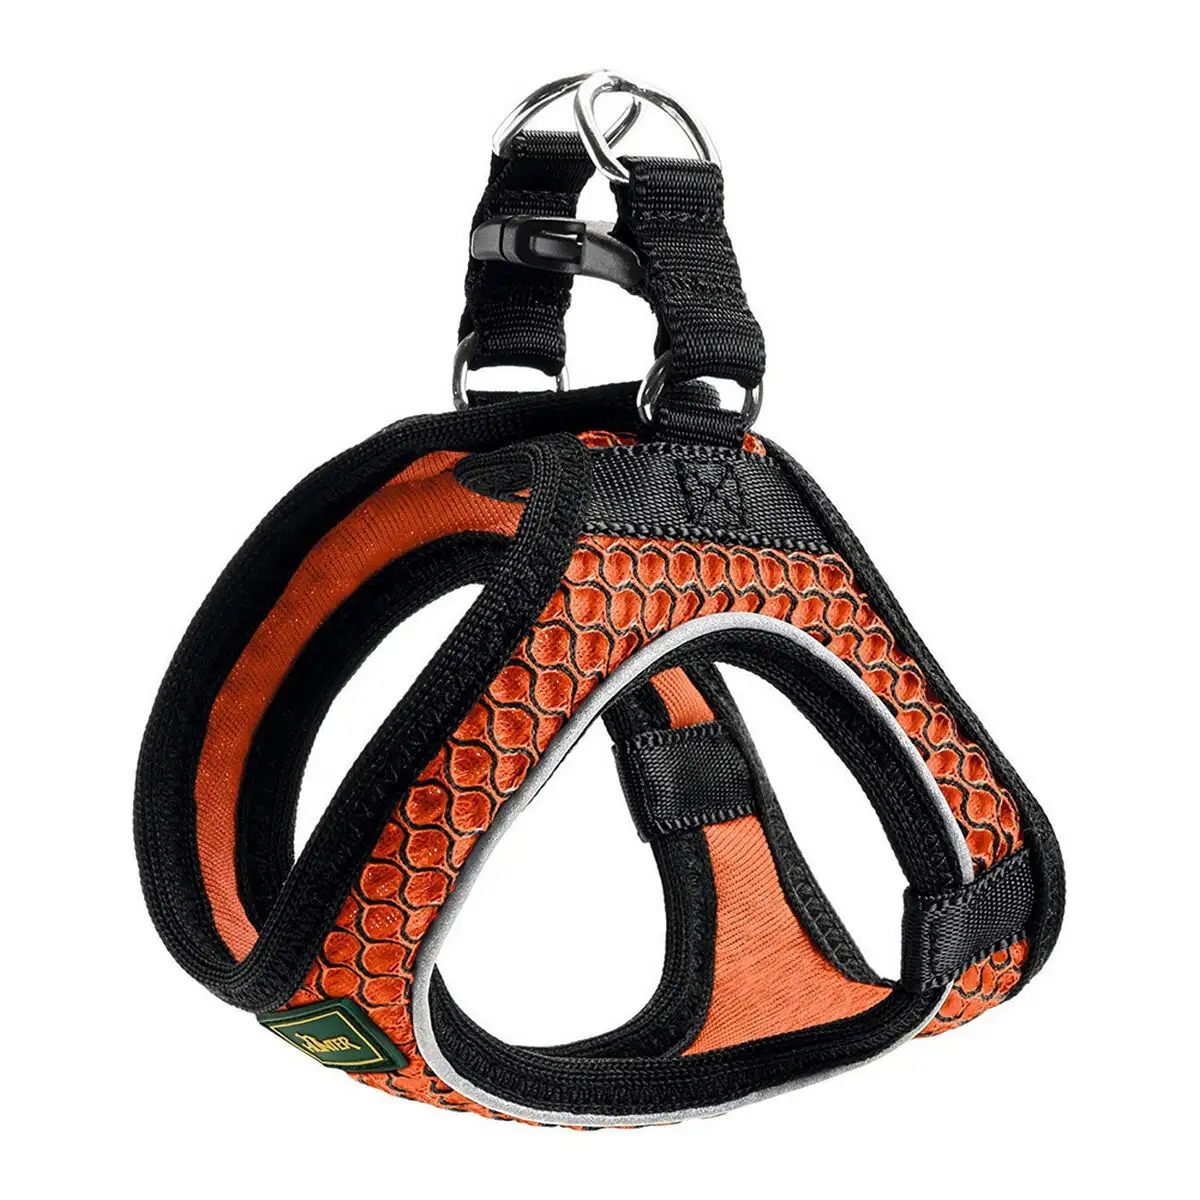 Harnais pour chien hunter hilo comfort 55 60 cm orange m_4236. DIAYTAR SENEGAL - Votre Portail Vers l'Exclusivité. Explorez notre boutique en ligne pour trouver des produits uniques et exclusifs, conçus pour les amateurs de qualité.